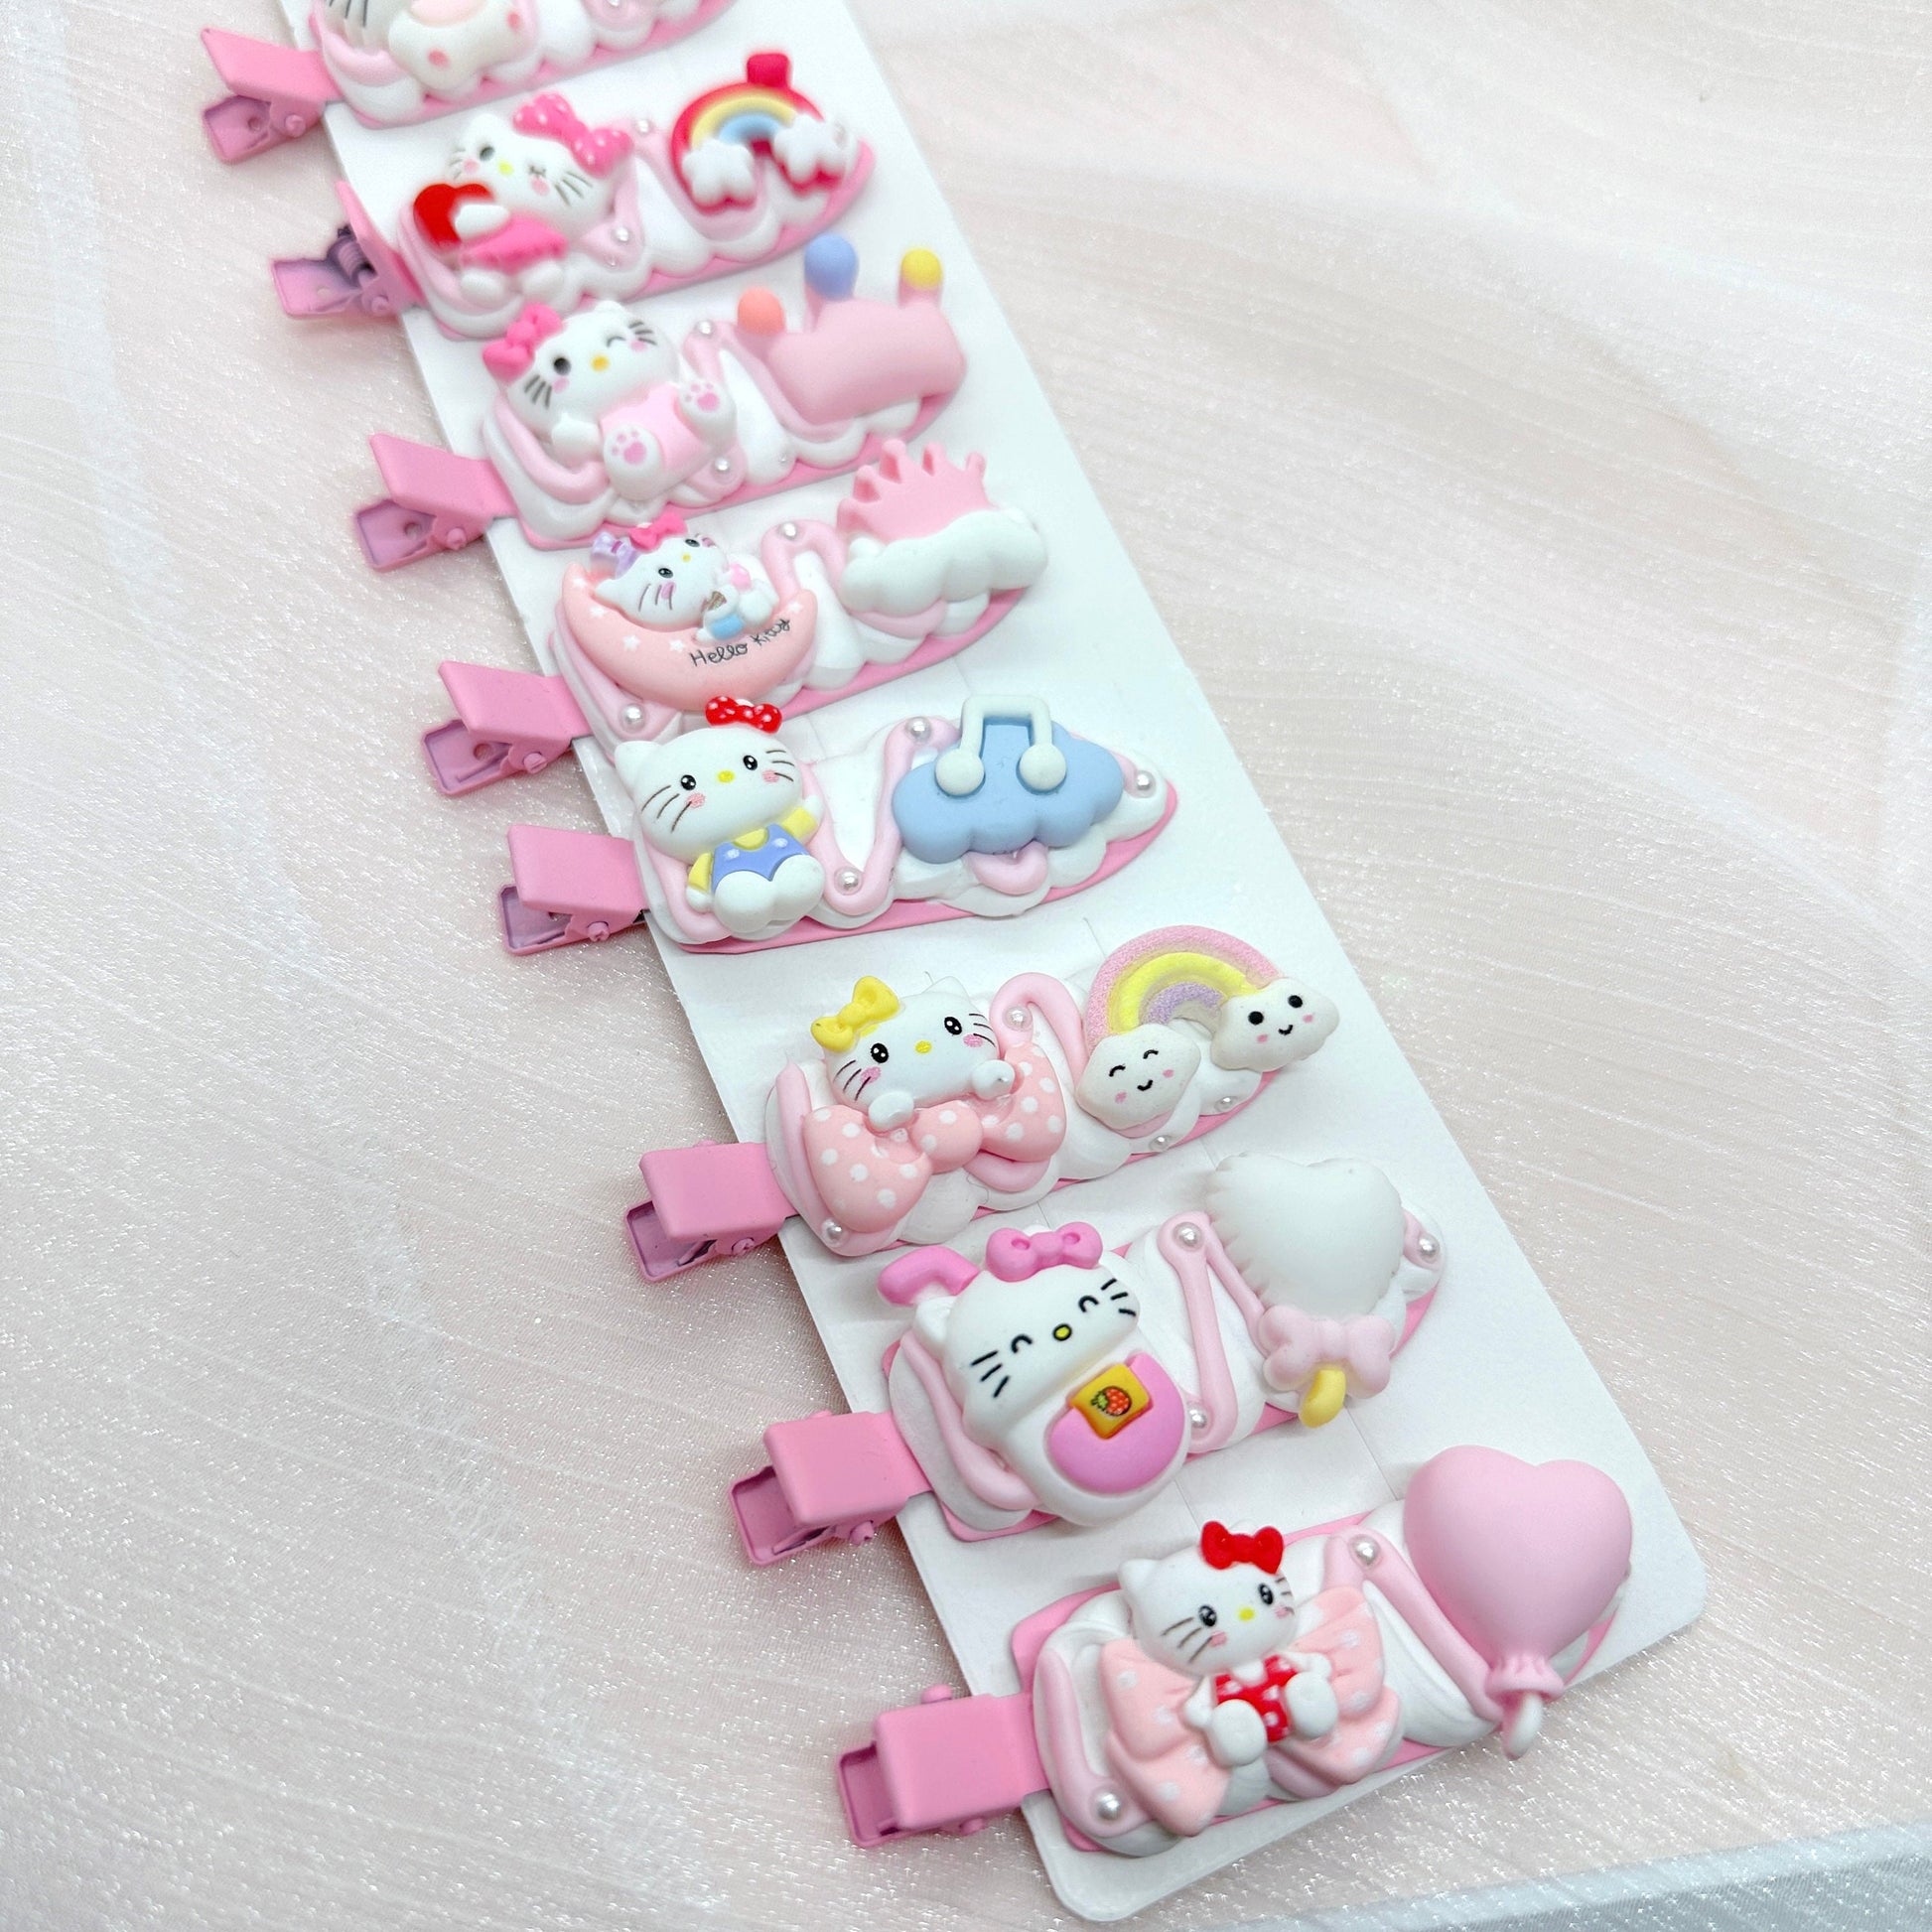 Kawaii Hello Kitty hair clips, Handmade Pink Kitty Barrette, Random 1, cute decoden hair accessories, each one is unique